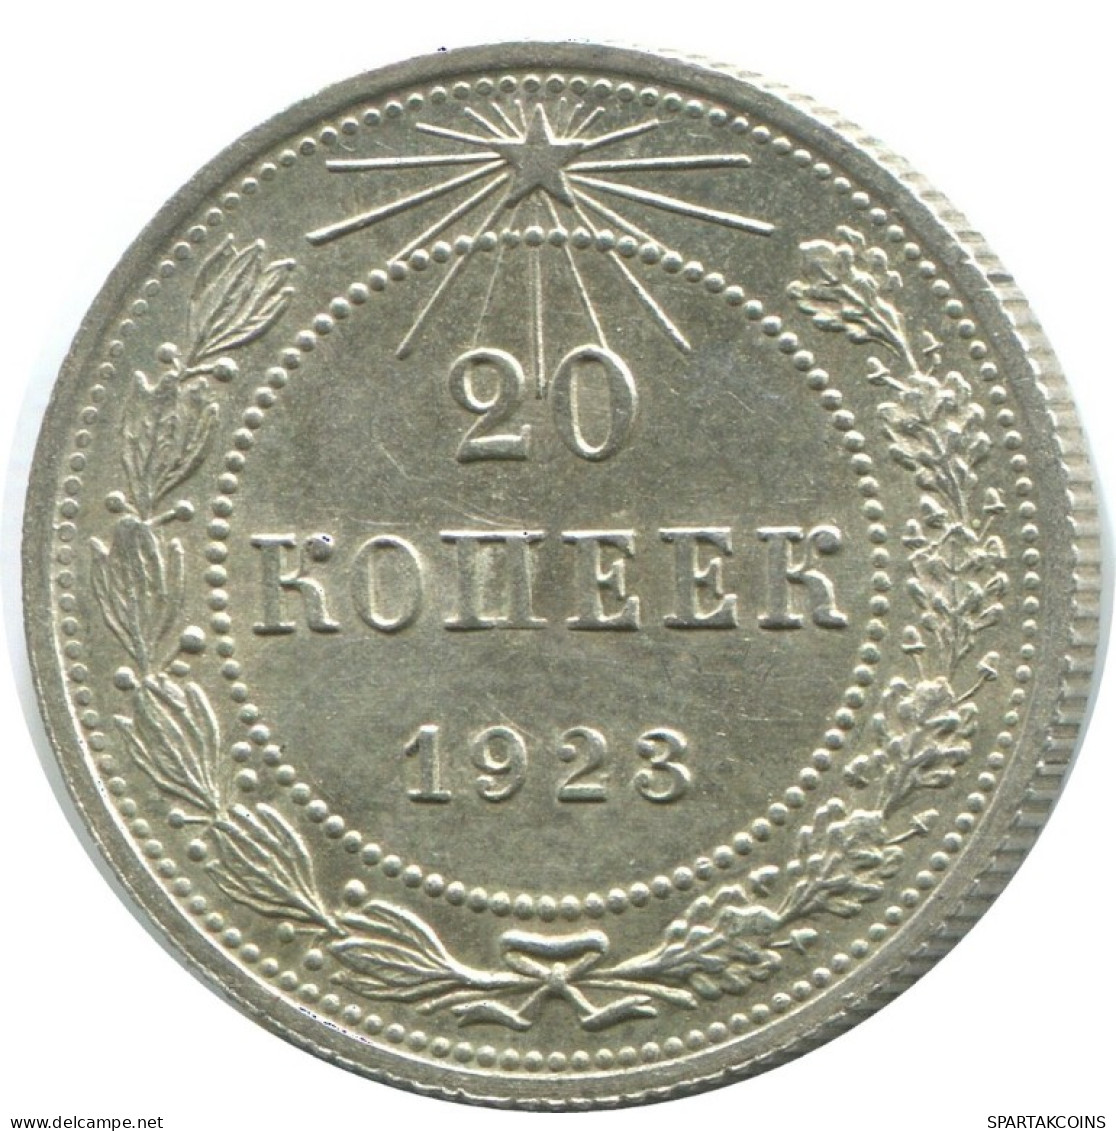 20 KOPEKS 1923 RUSSLAND RUSSIA RSFSR SILBER Münze HIGH GRADE #AF597.D.A - Rusia